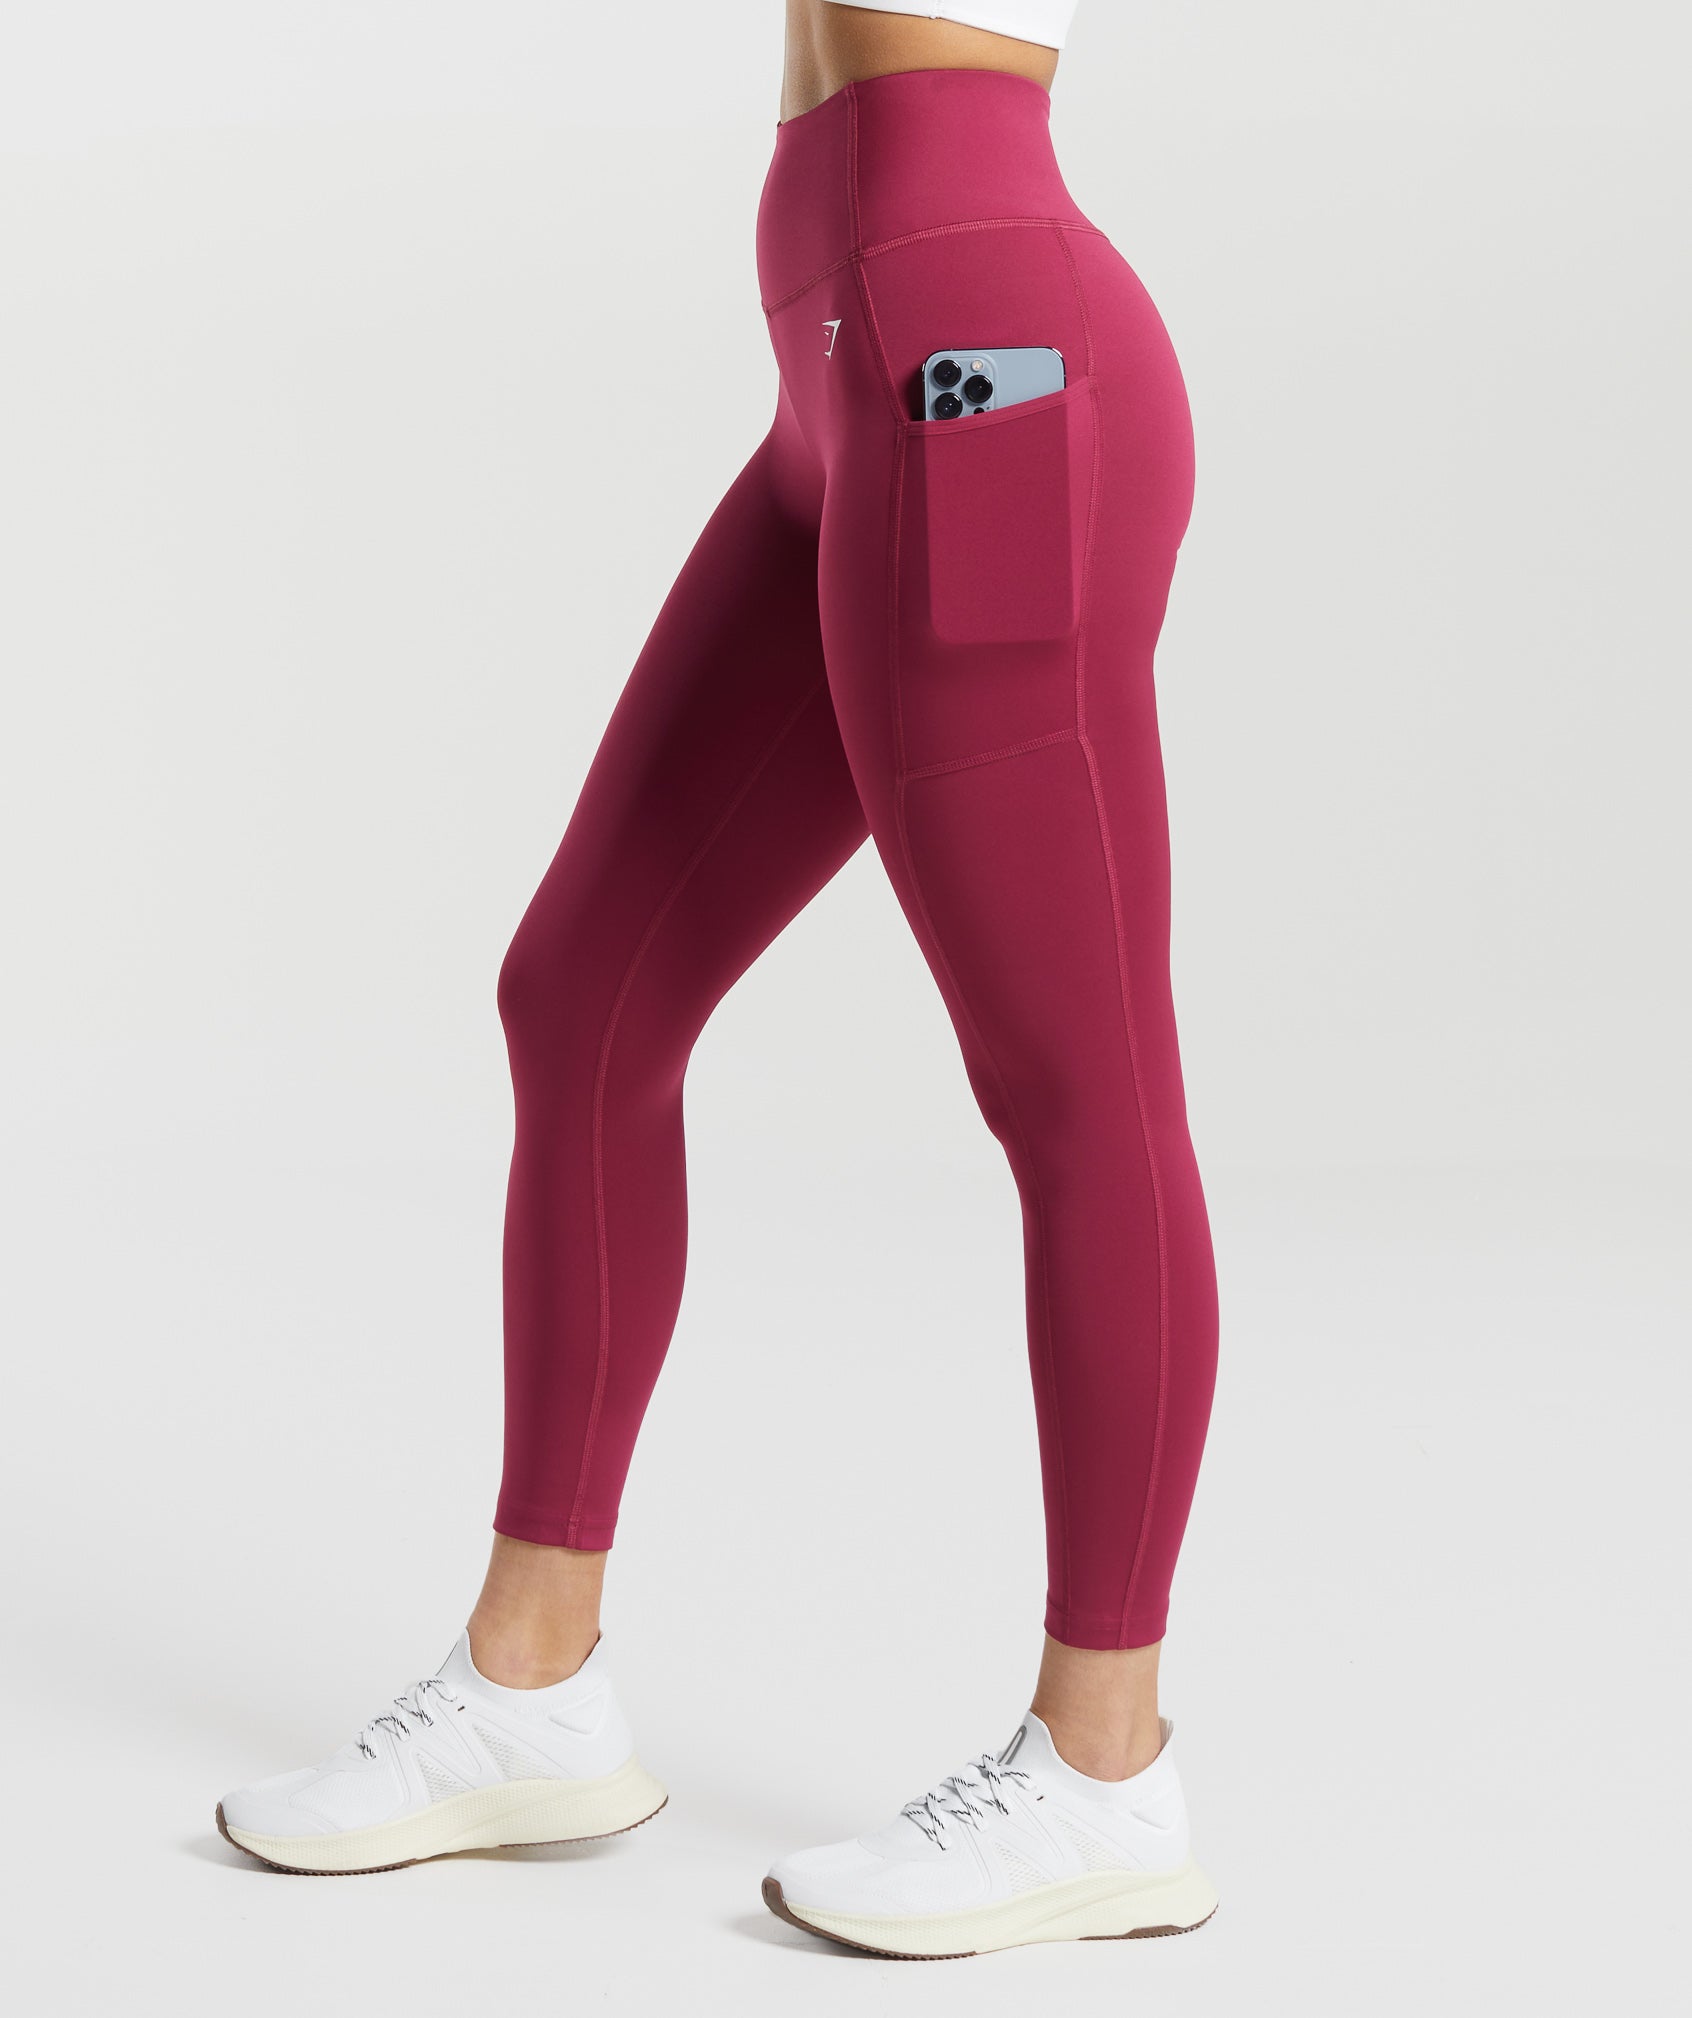 Gymshark woman's Full length Training Leggings Raspberry Red Size